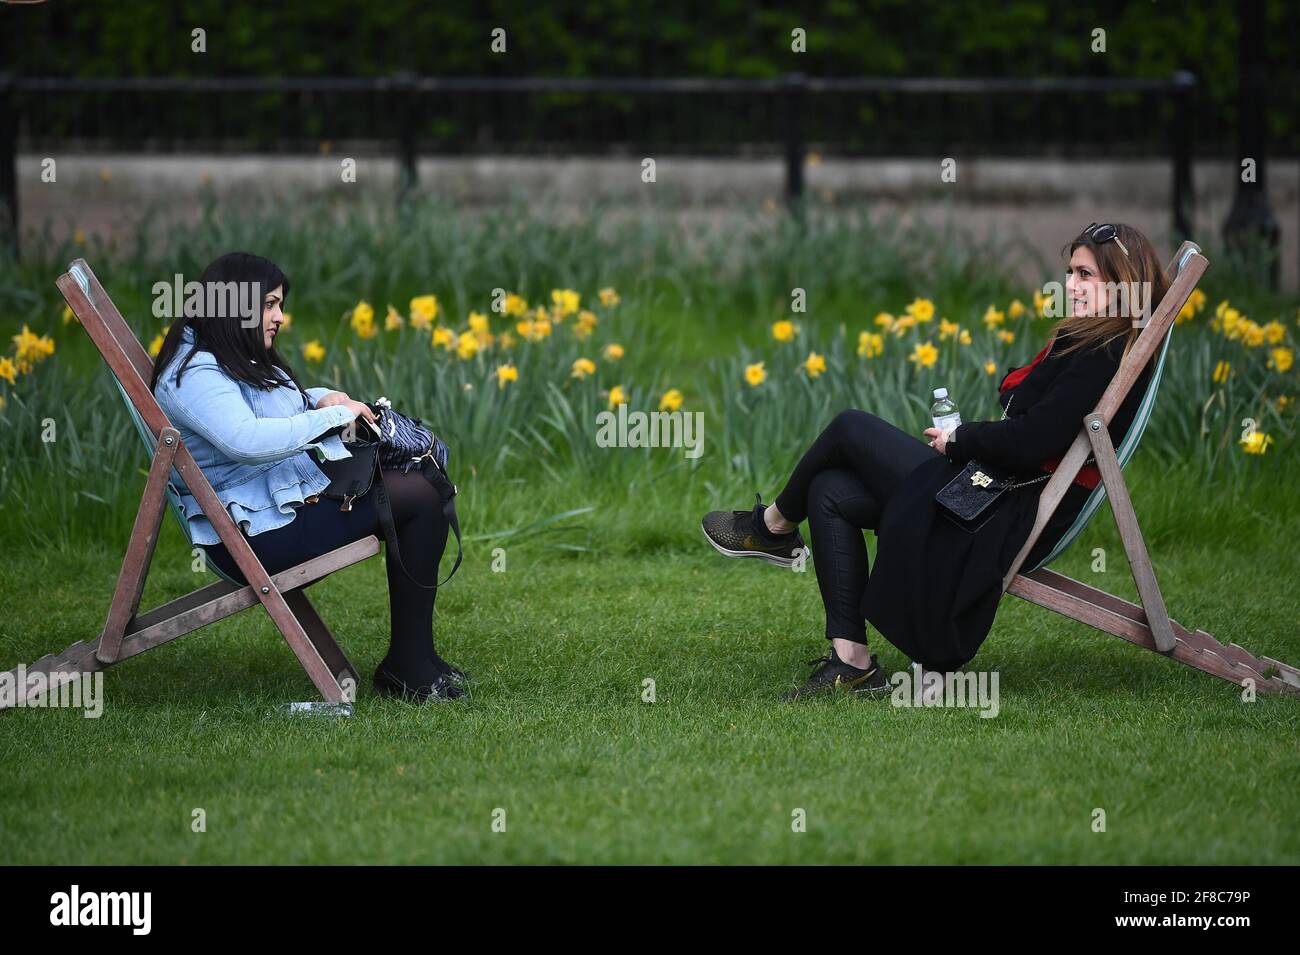 Zwei Frauen sitzen in Liegestühlen im Green Park, London. Bilddatum: Dienstag, 13. April 2021. Stockfoto